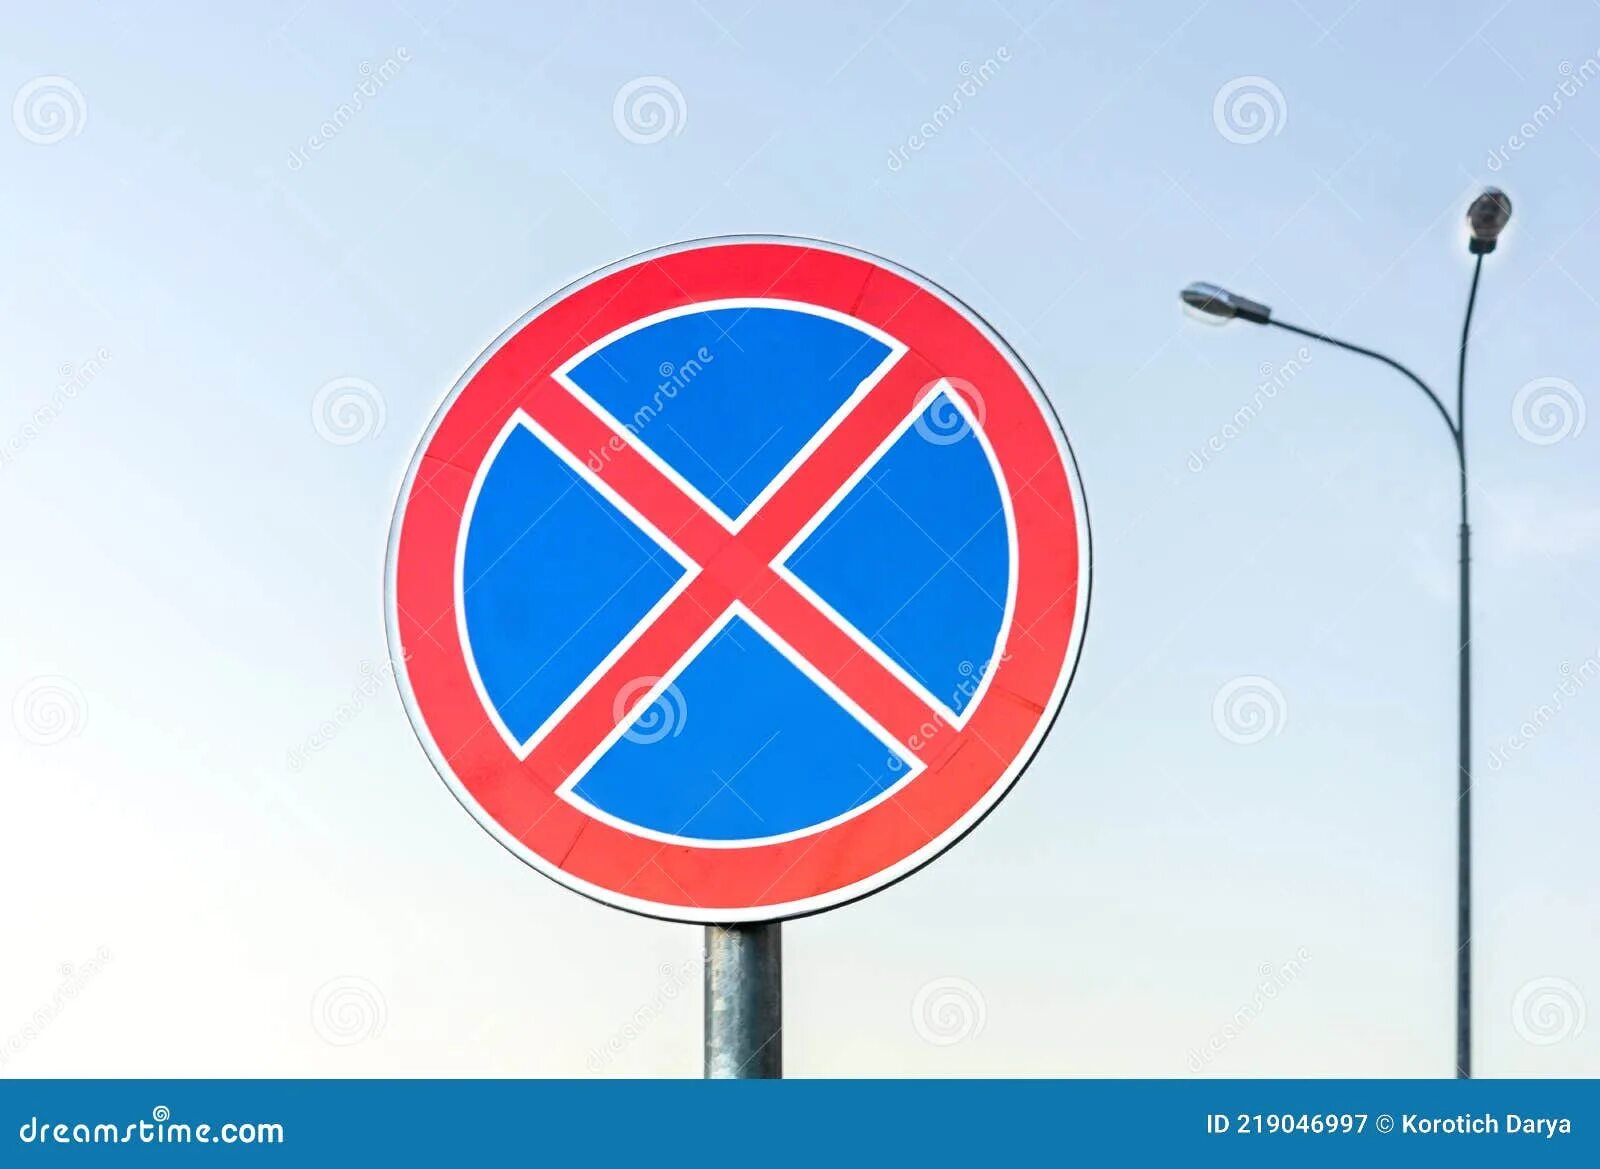 Круглые дорожные знаки с крестом. Круглый знак с красным крестом. Круглый знак с красным крестом на синем фоне. Красный крест на синем фоне дорожный знак.